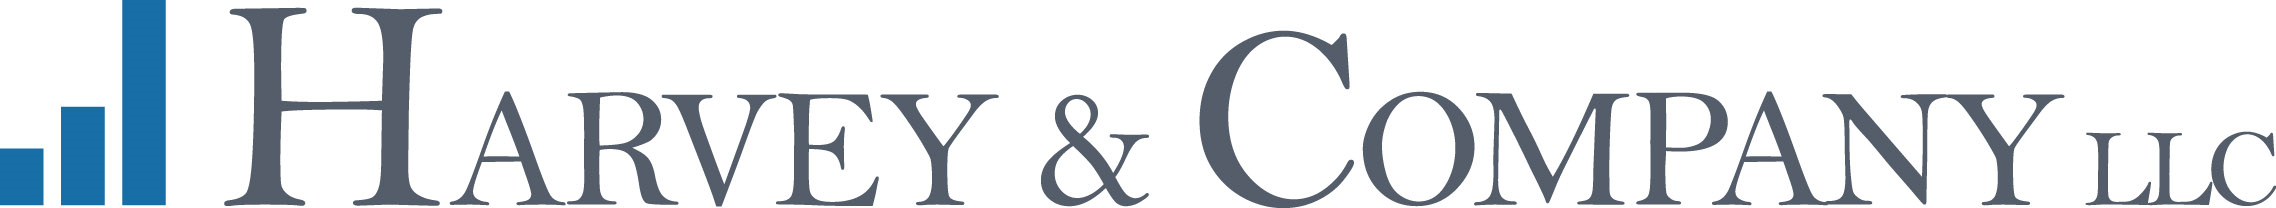 Harvey & Company LLC Company Logo